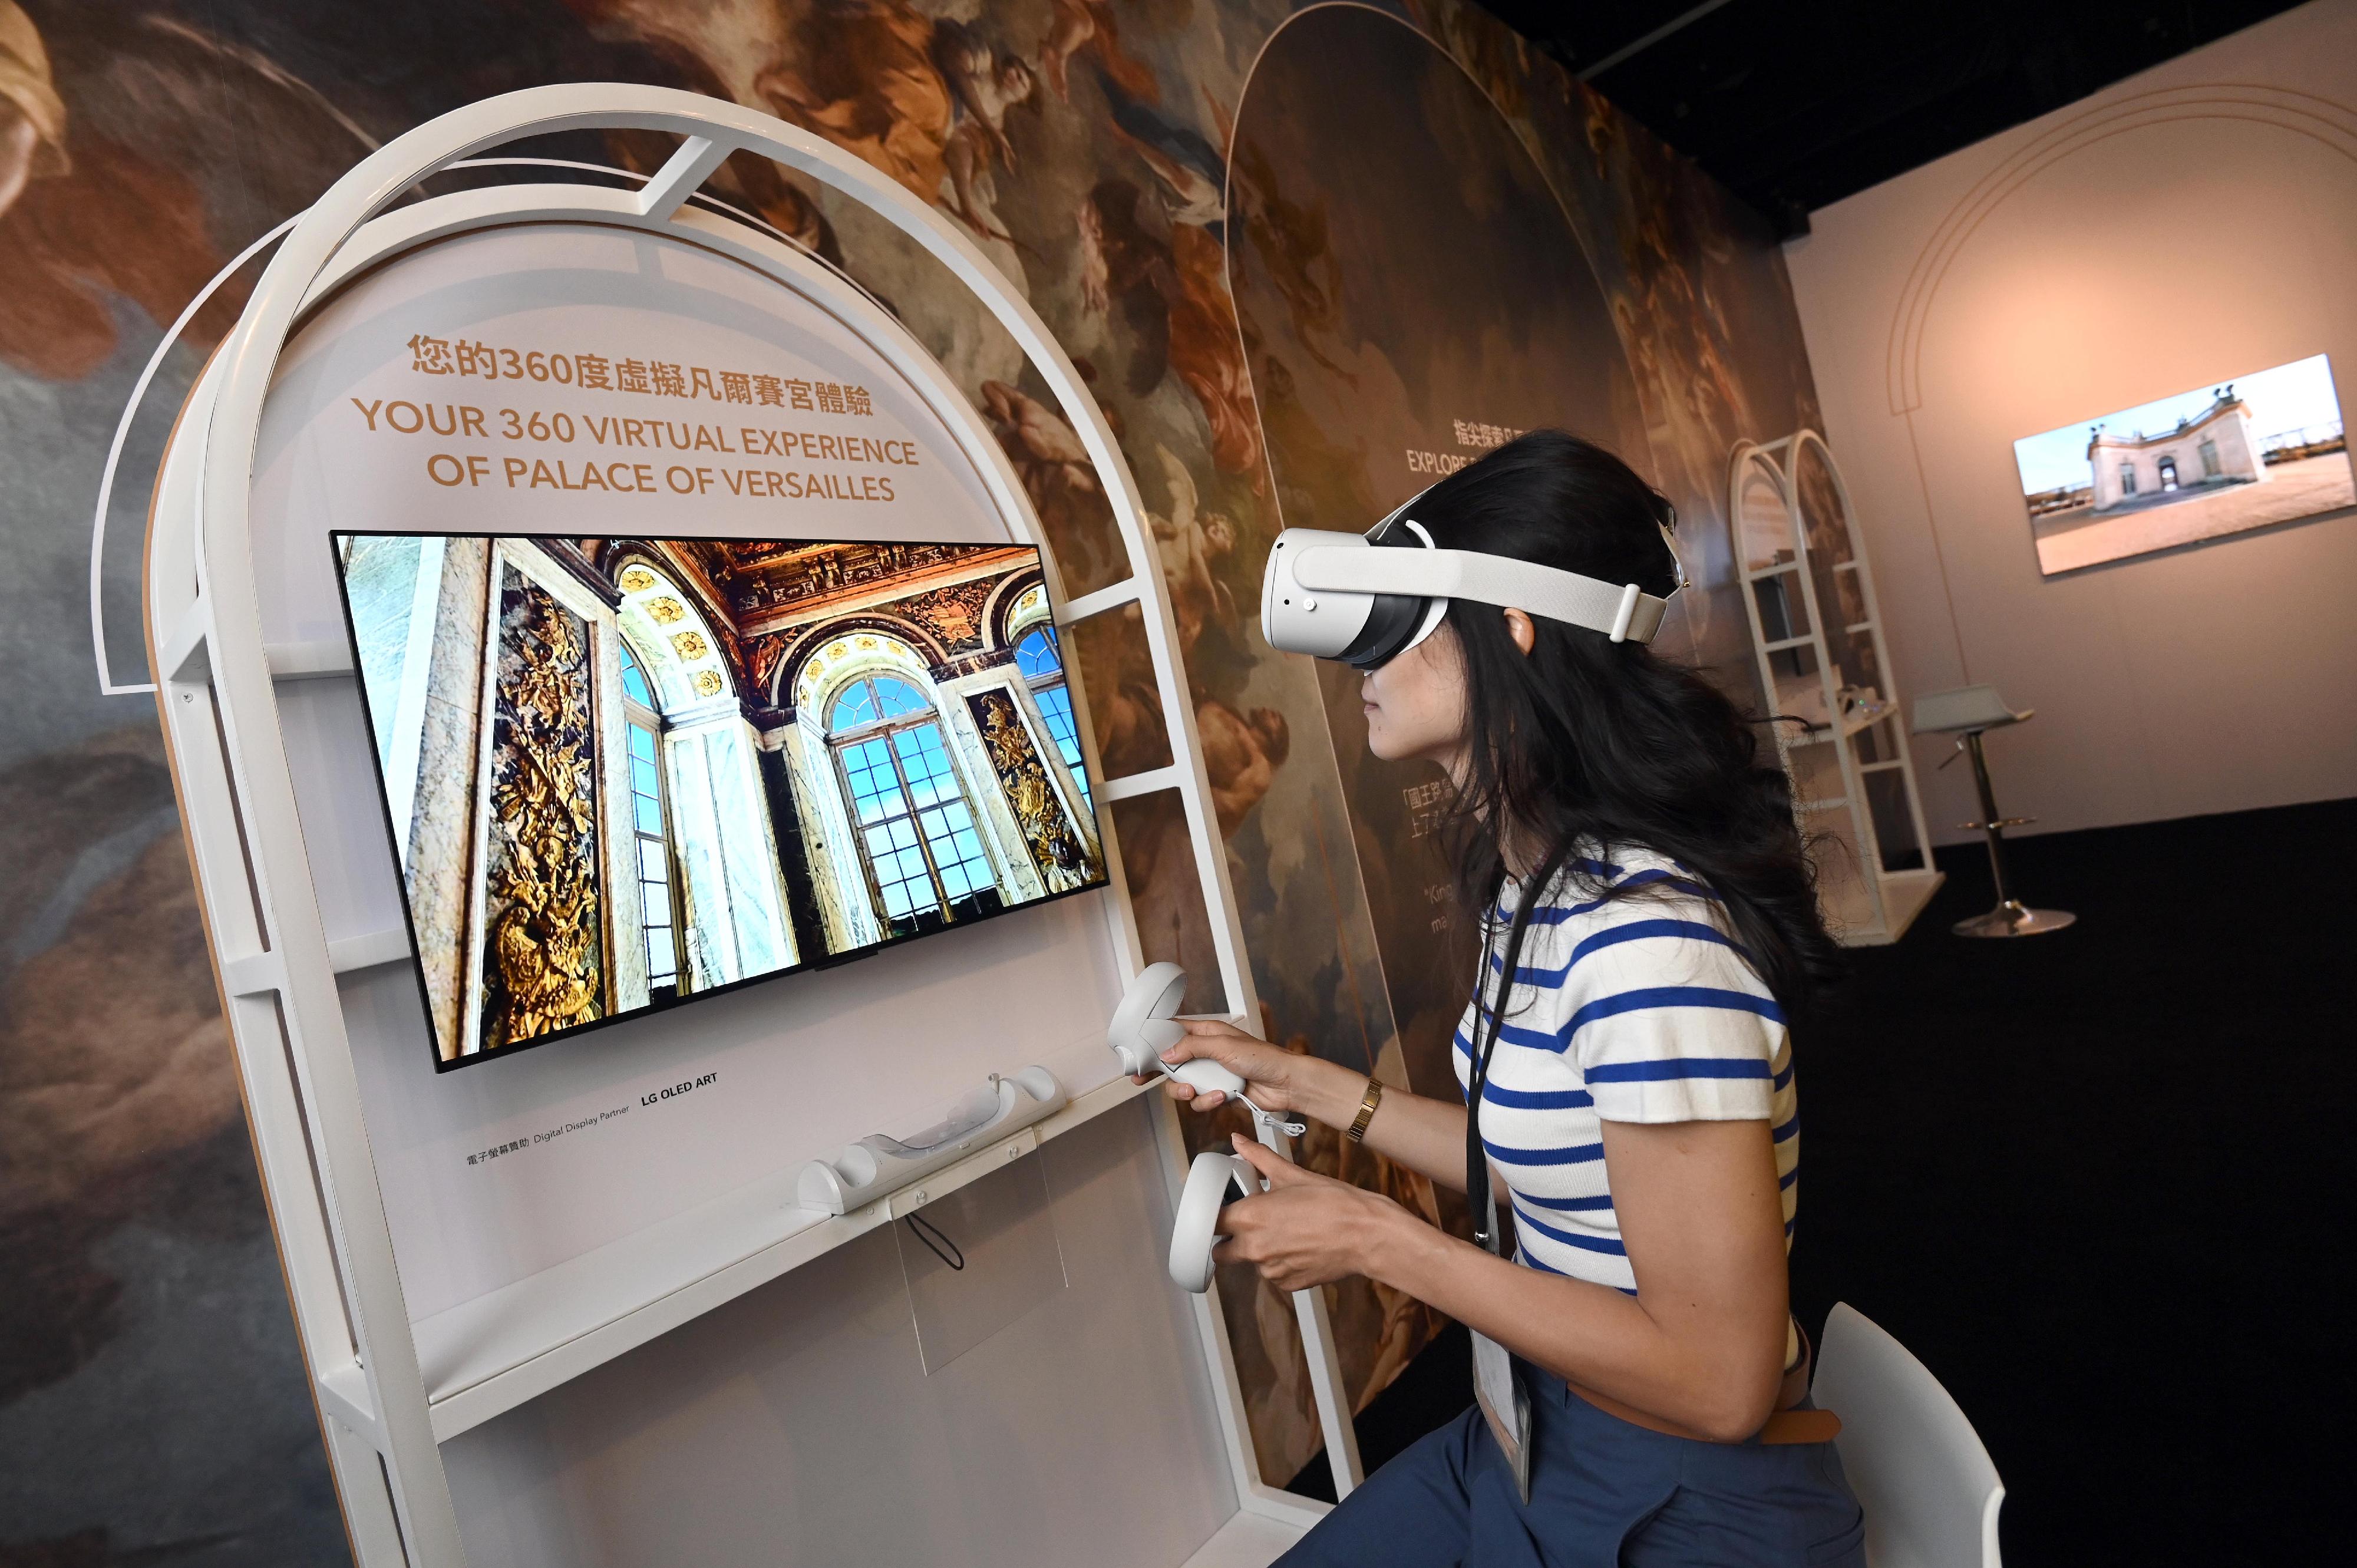 「虛擬凡爾賽宮之旅」展覽開幕典禮今日（四月十九日）在香港文化博物館舉行。圖示「凡爾賽宮3D畫廊」，透過虛擬實境技術，帶領觀眾走進凡爾賽宮，細賞宮中精選建築的陳設裝飾和建築特色。